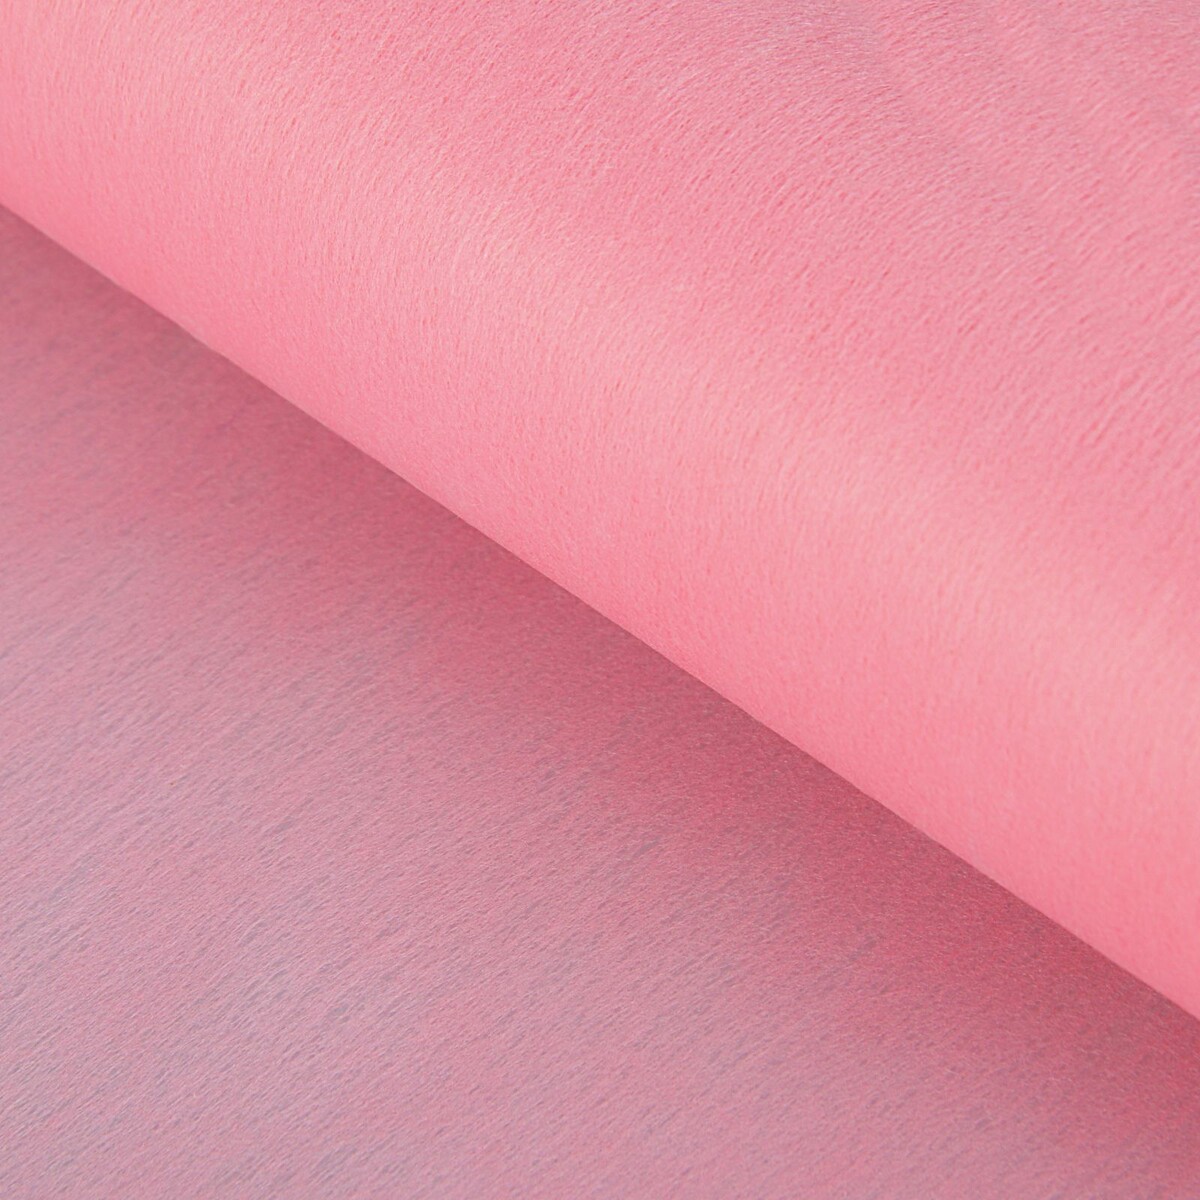 Фетр для упаковок и поделок, однотонный, розовый, двусторонний, рулон 1шт., 0,5 x 20 м фетр для упаковок и поделок однотонный красный двусторонний рулон 1шт 50 см x 15 м